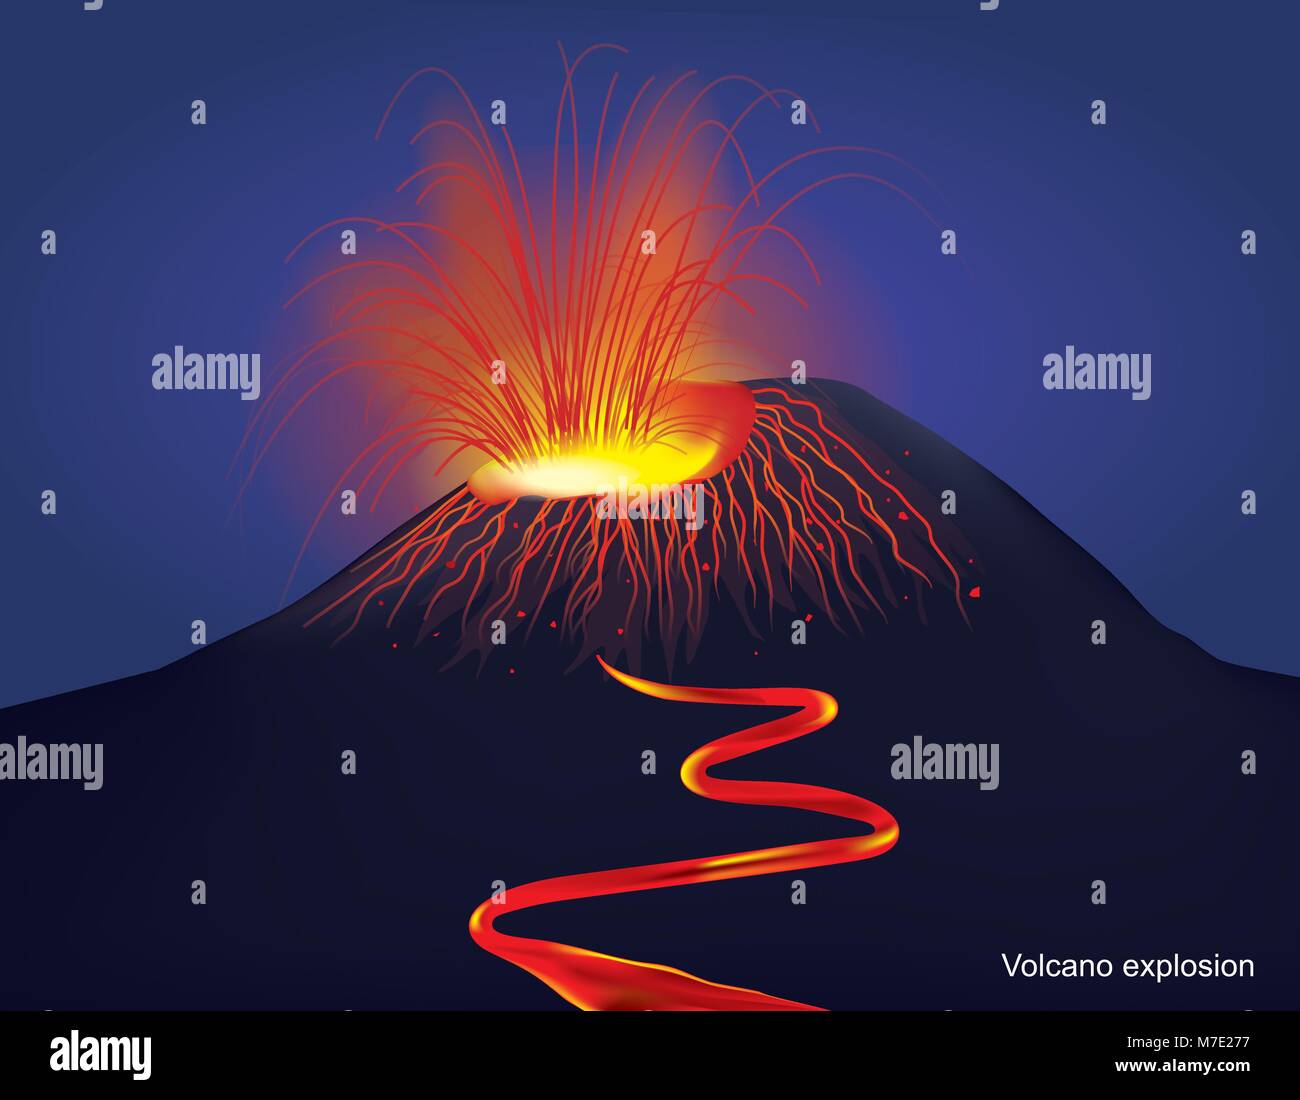 La più comune la percezione di un vulcano è di una montagna conica, produca lava e gas velenosi da un cratere al suo vertice. Illustrazione Vettore gr Illustrazione Vettoriale